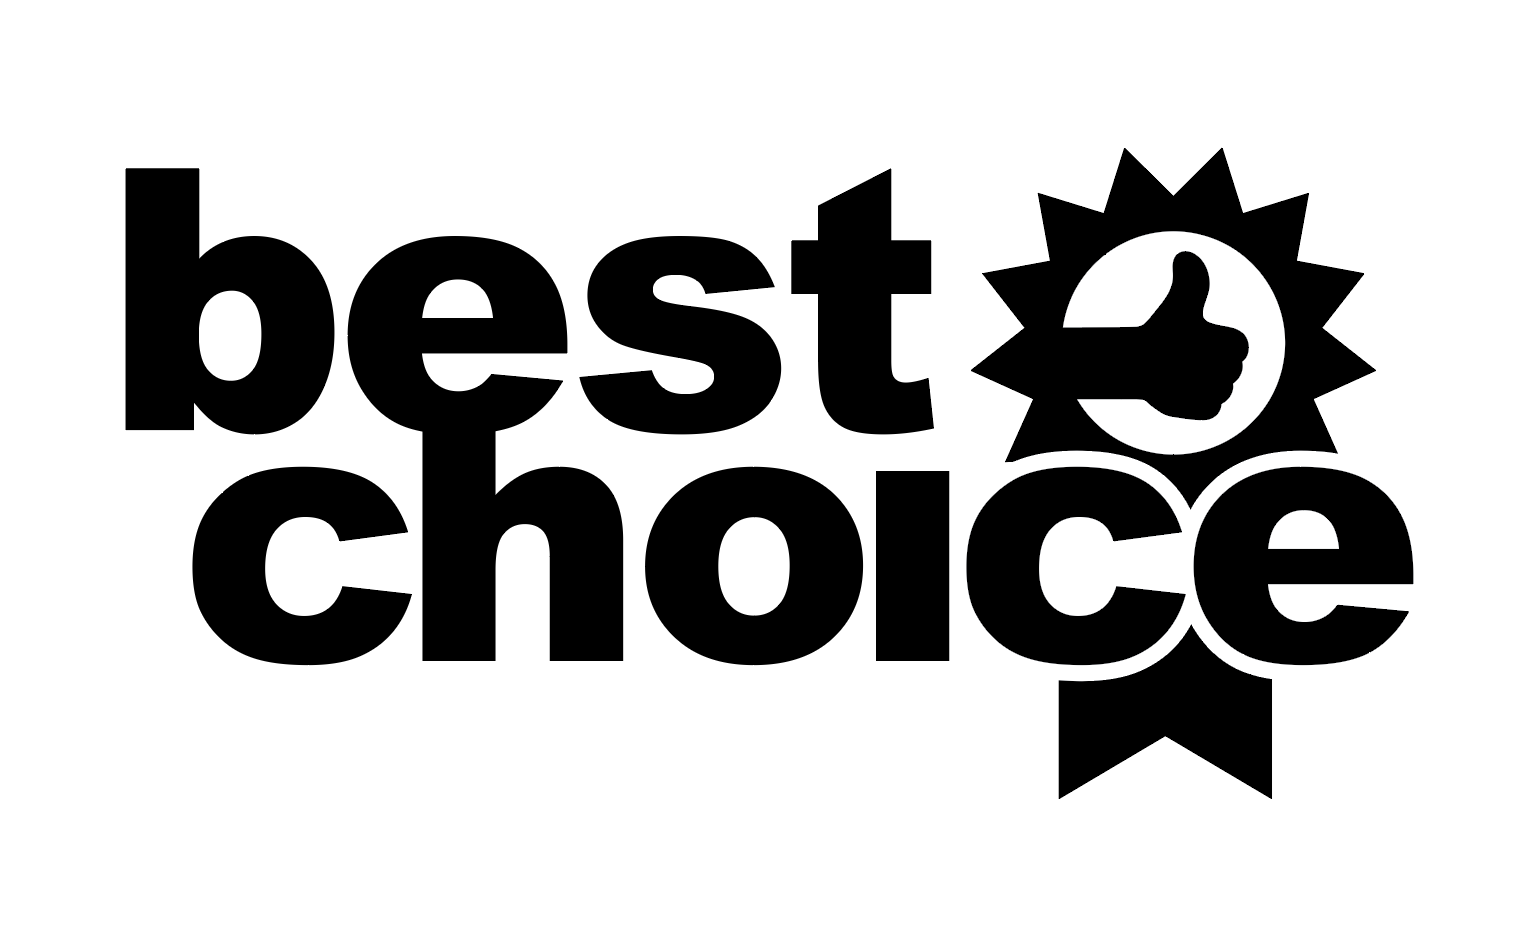 The best choice. Choice logo. Best choice logo. Choice надпись. Easy choice